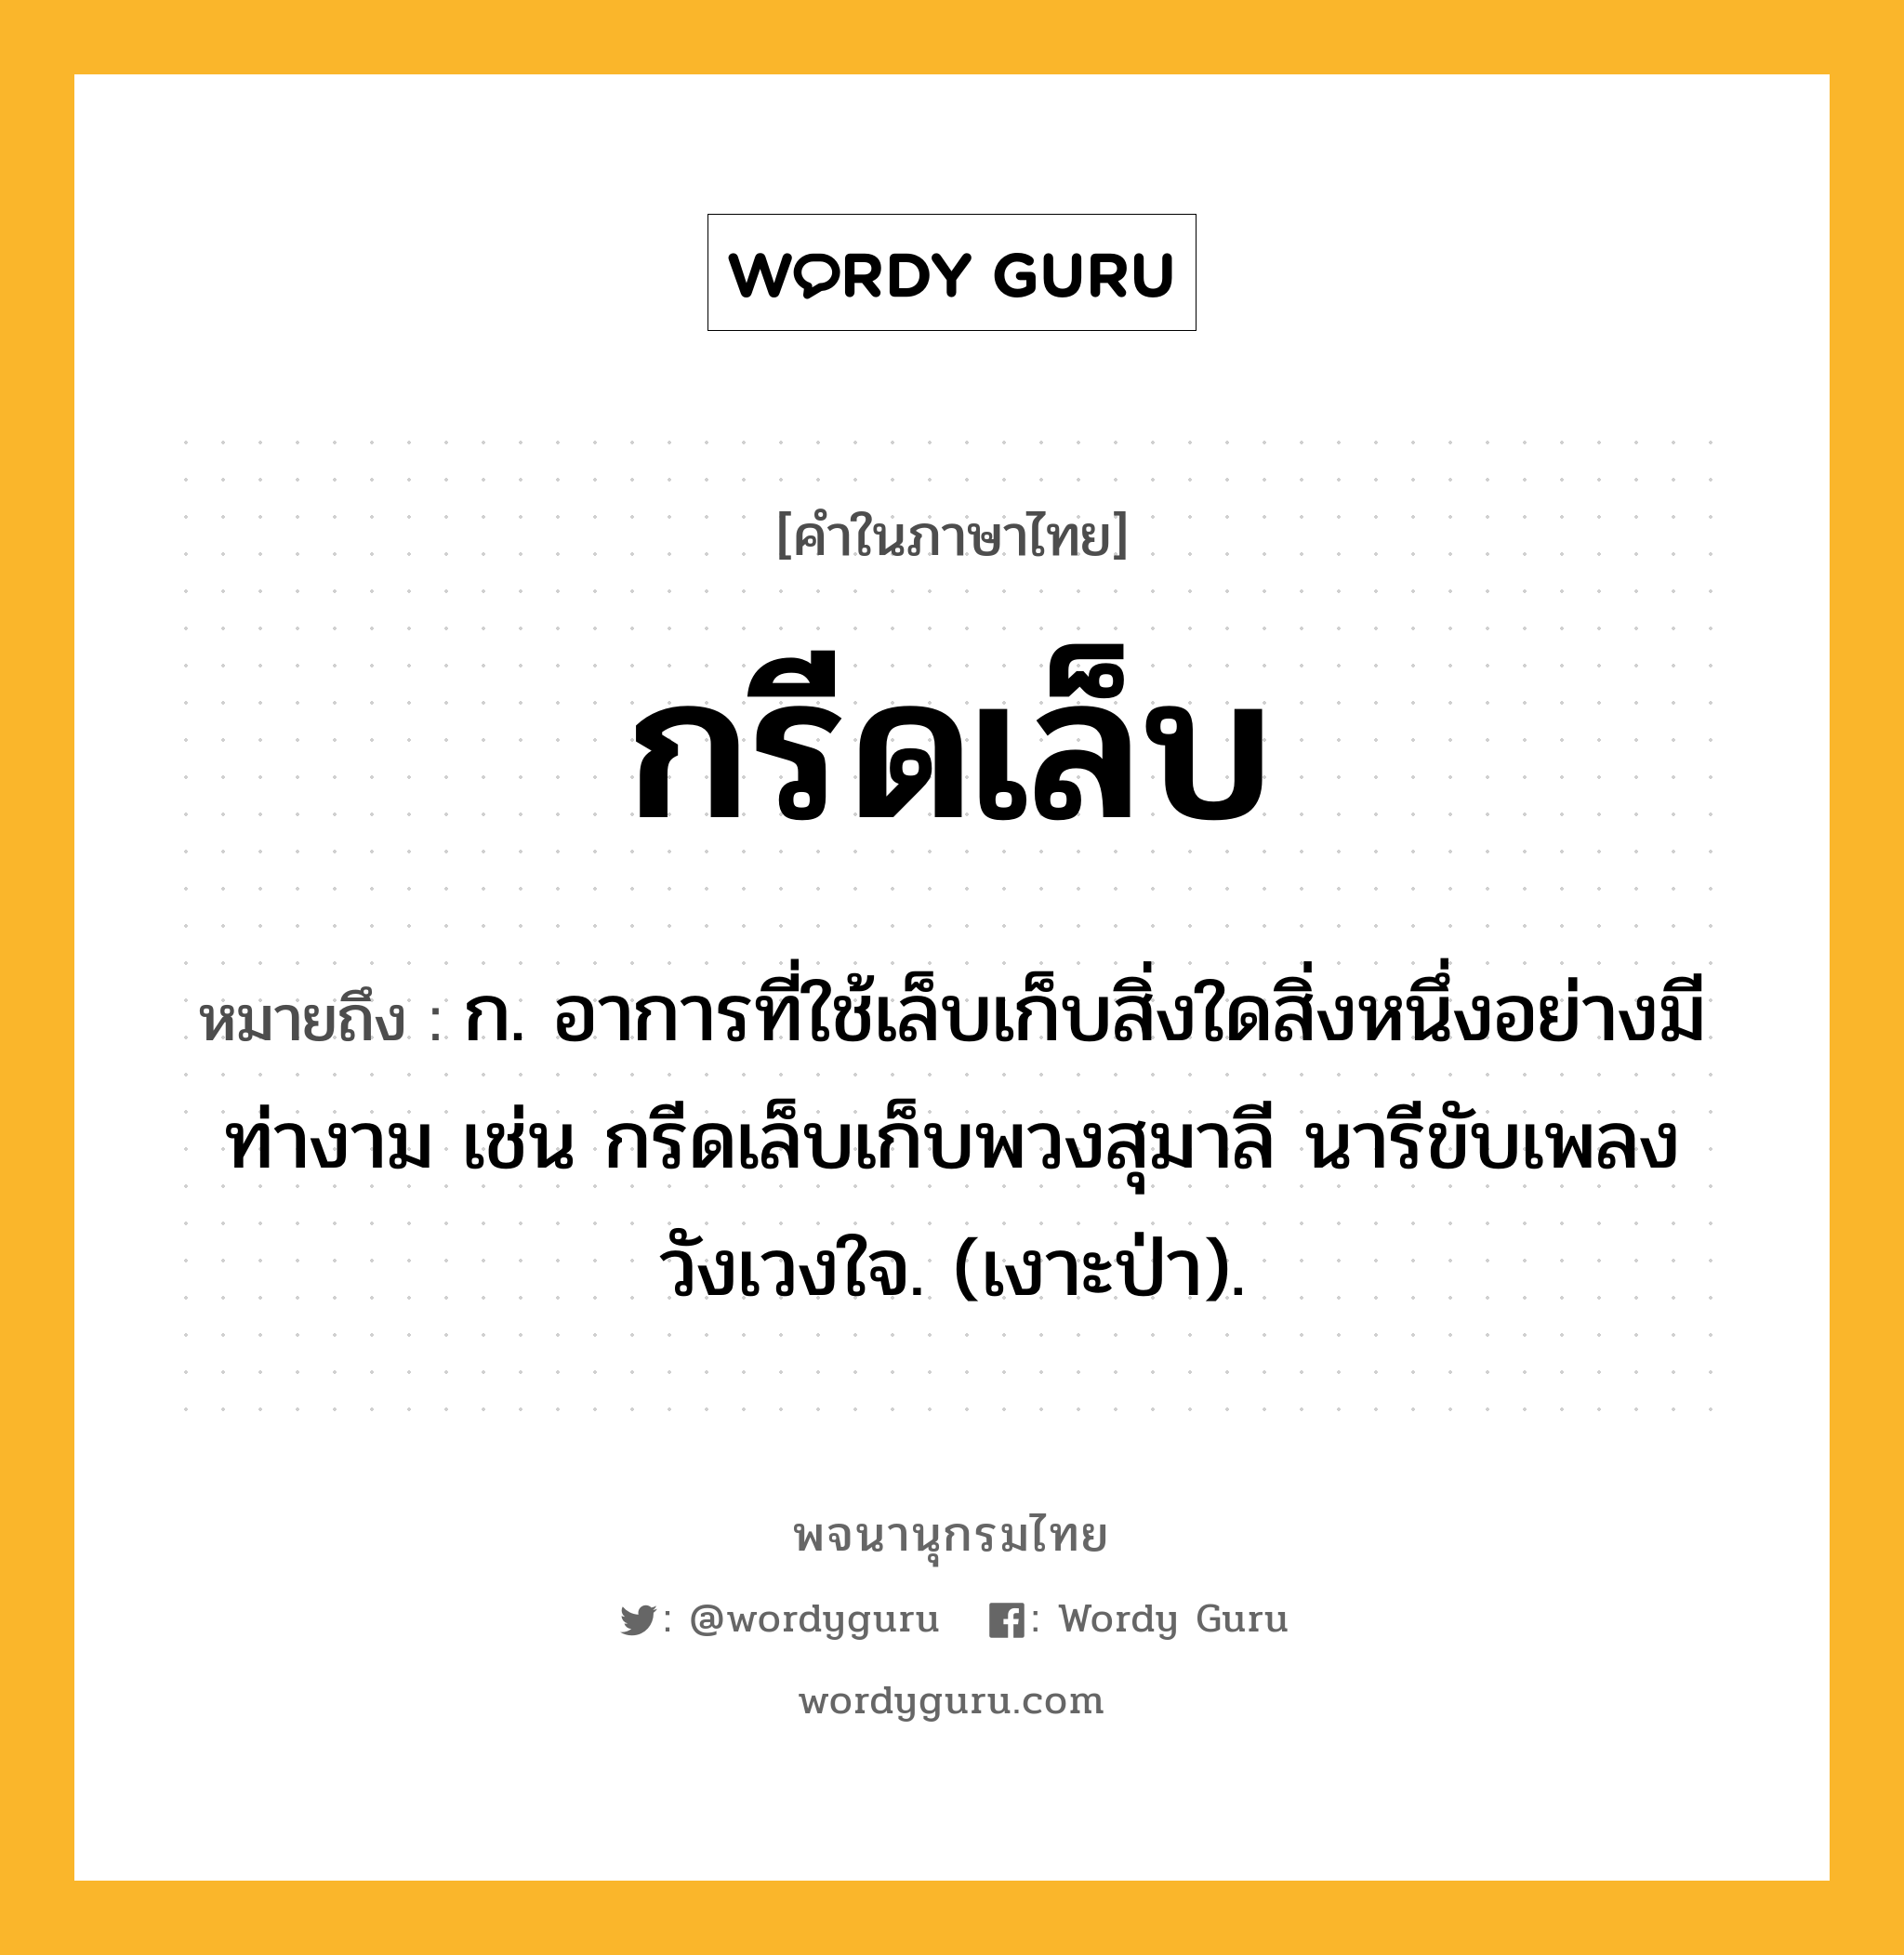 กรีดเล็บ ความหมาย หมายถึงอะไร?, คำในภาษาไทย กรีดเล็บ หมายถึง ก. อาการที่ใช้เล็บเก็บสิ่งใดสิ่งหนึ่งอย่างมีท่างาม เช่น กรีดเล็บเก็บพวงสุมาลี นารีขับเพลงวังเวงใจ. (เงาะป่า).